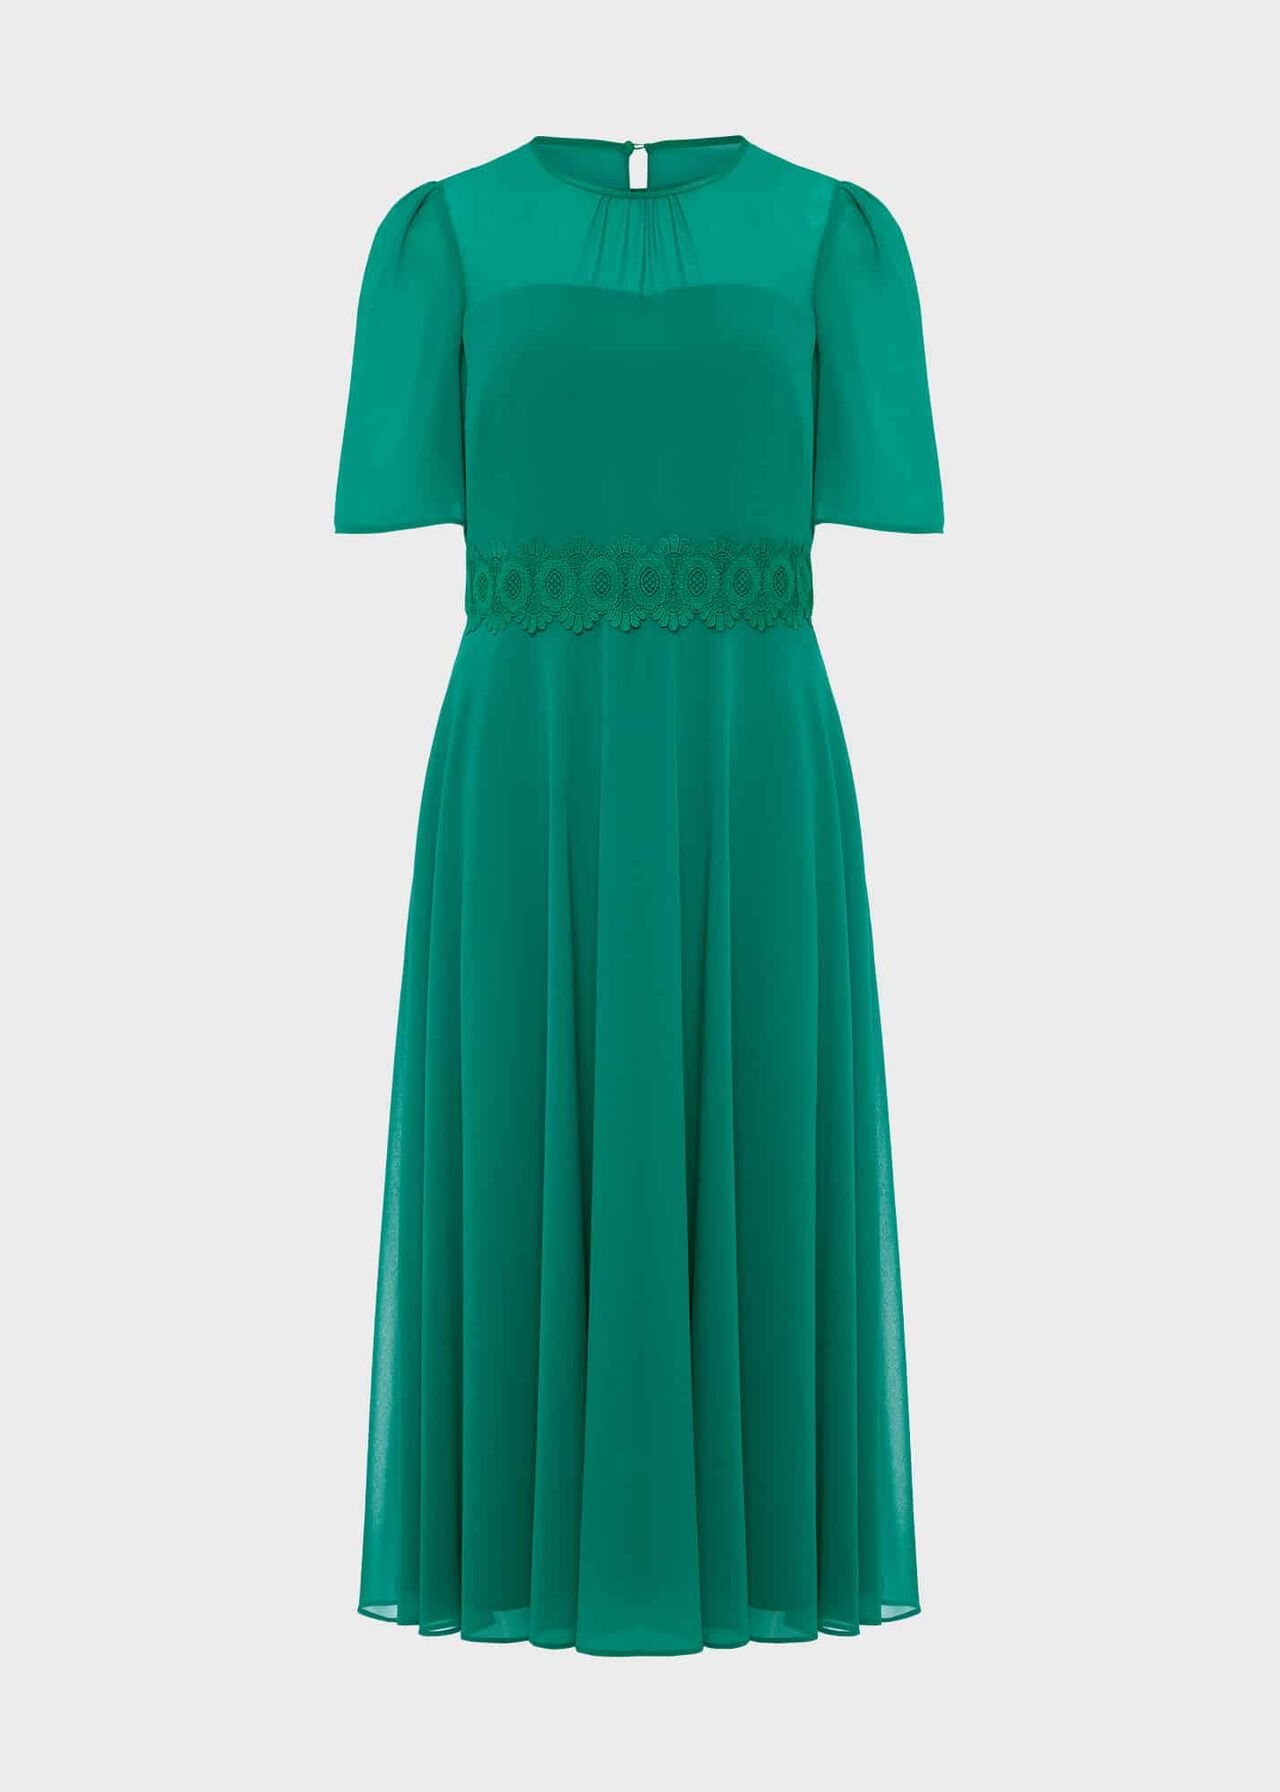 Petite Cressida Dress, Meadow Green, hi-res